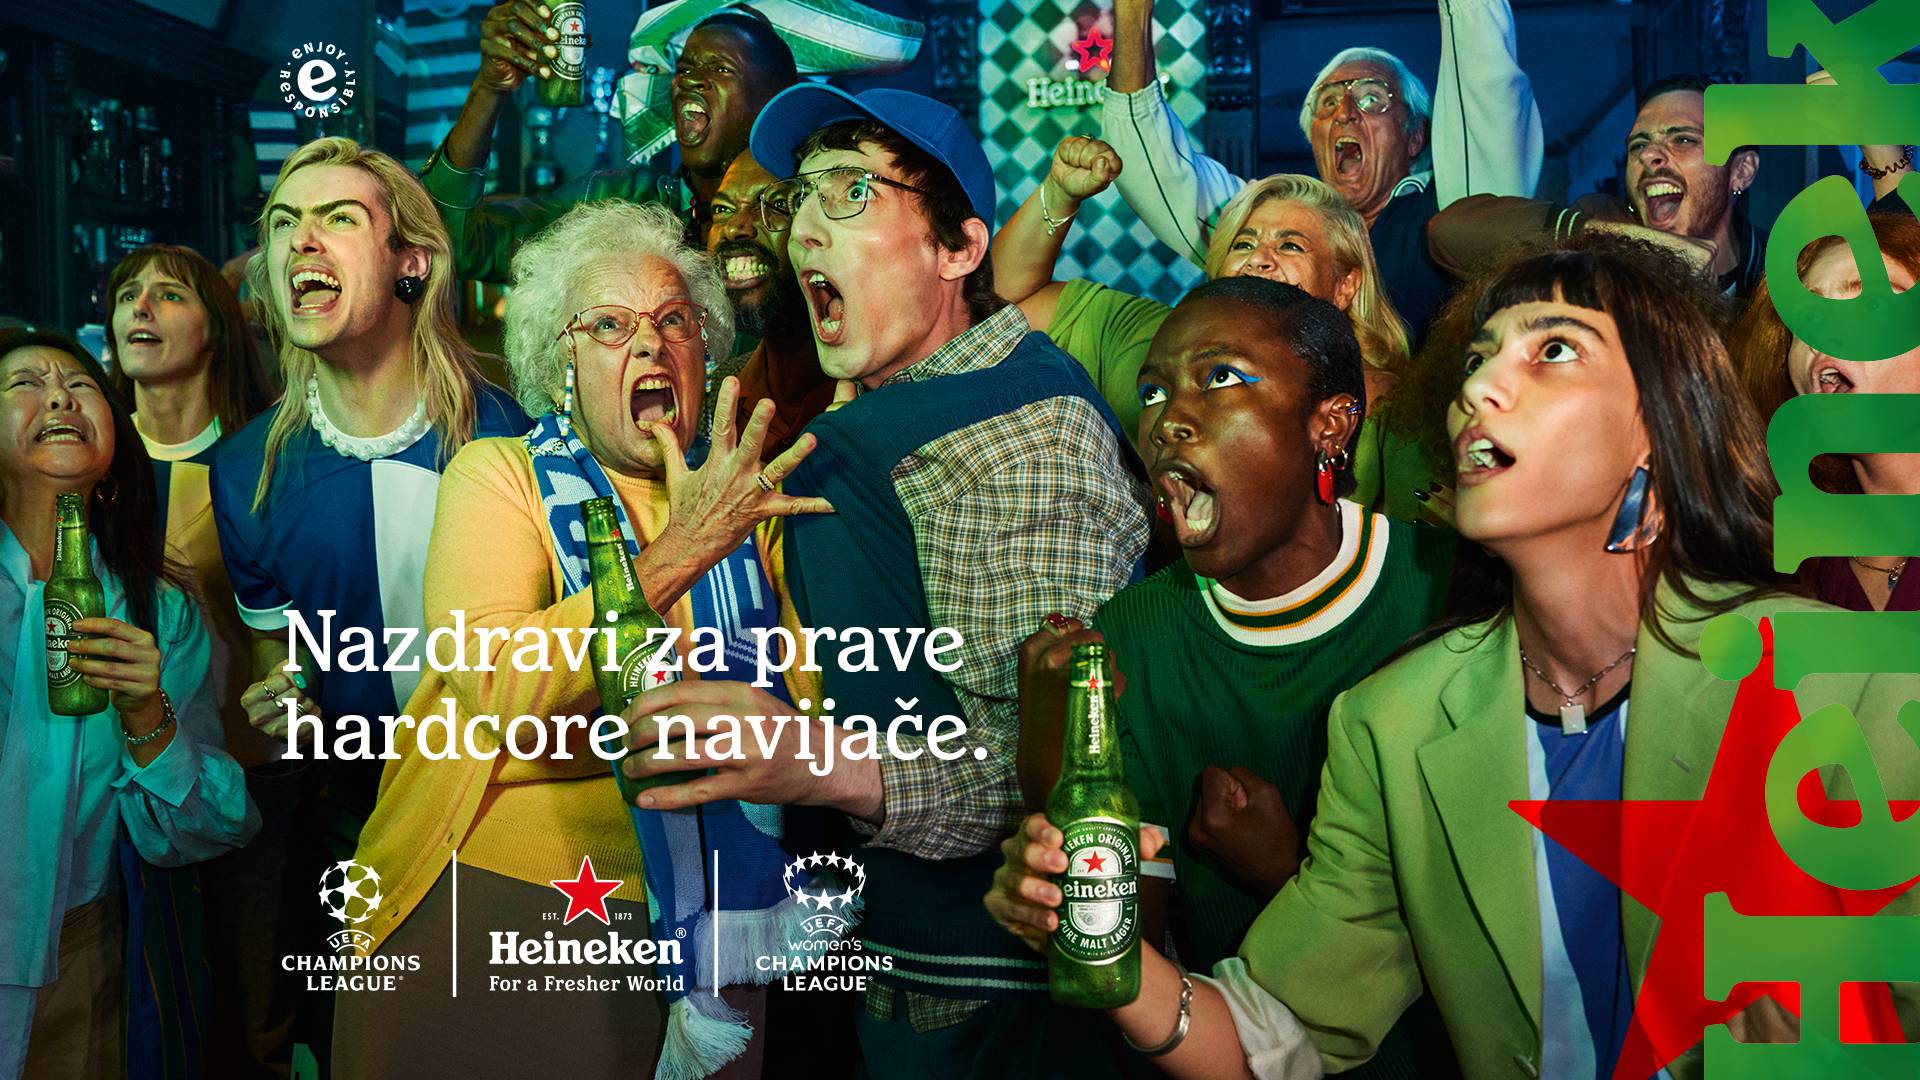 Heineken® nazdravlja pravim hardcore navijačima – nisu oni koji vam prvo padnu na pamet